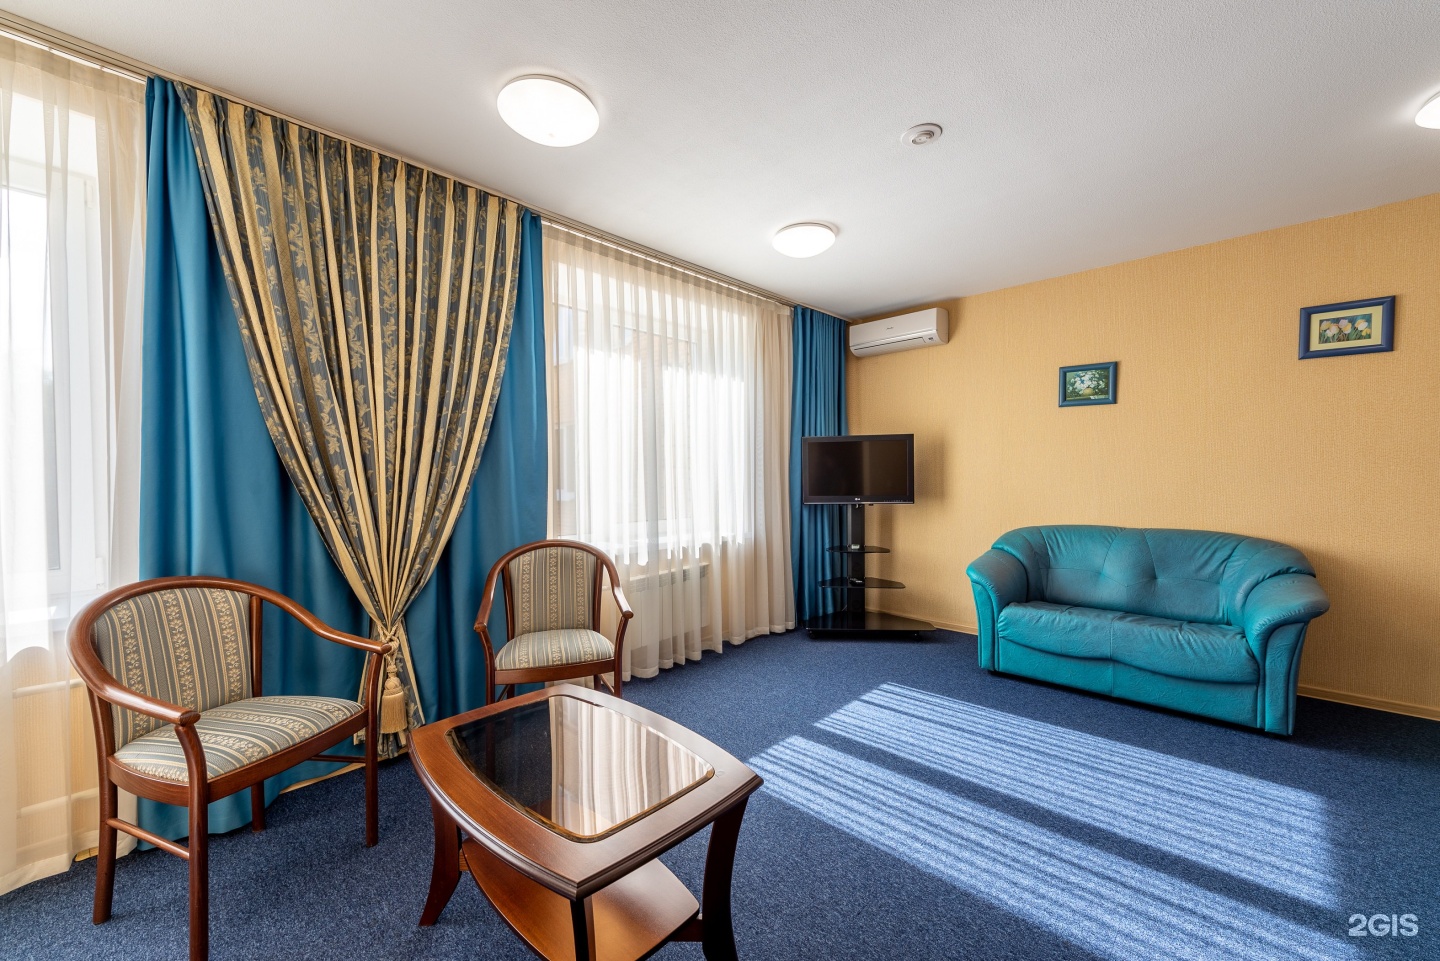 Отель турист санкт петербург отзывы